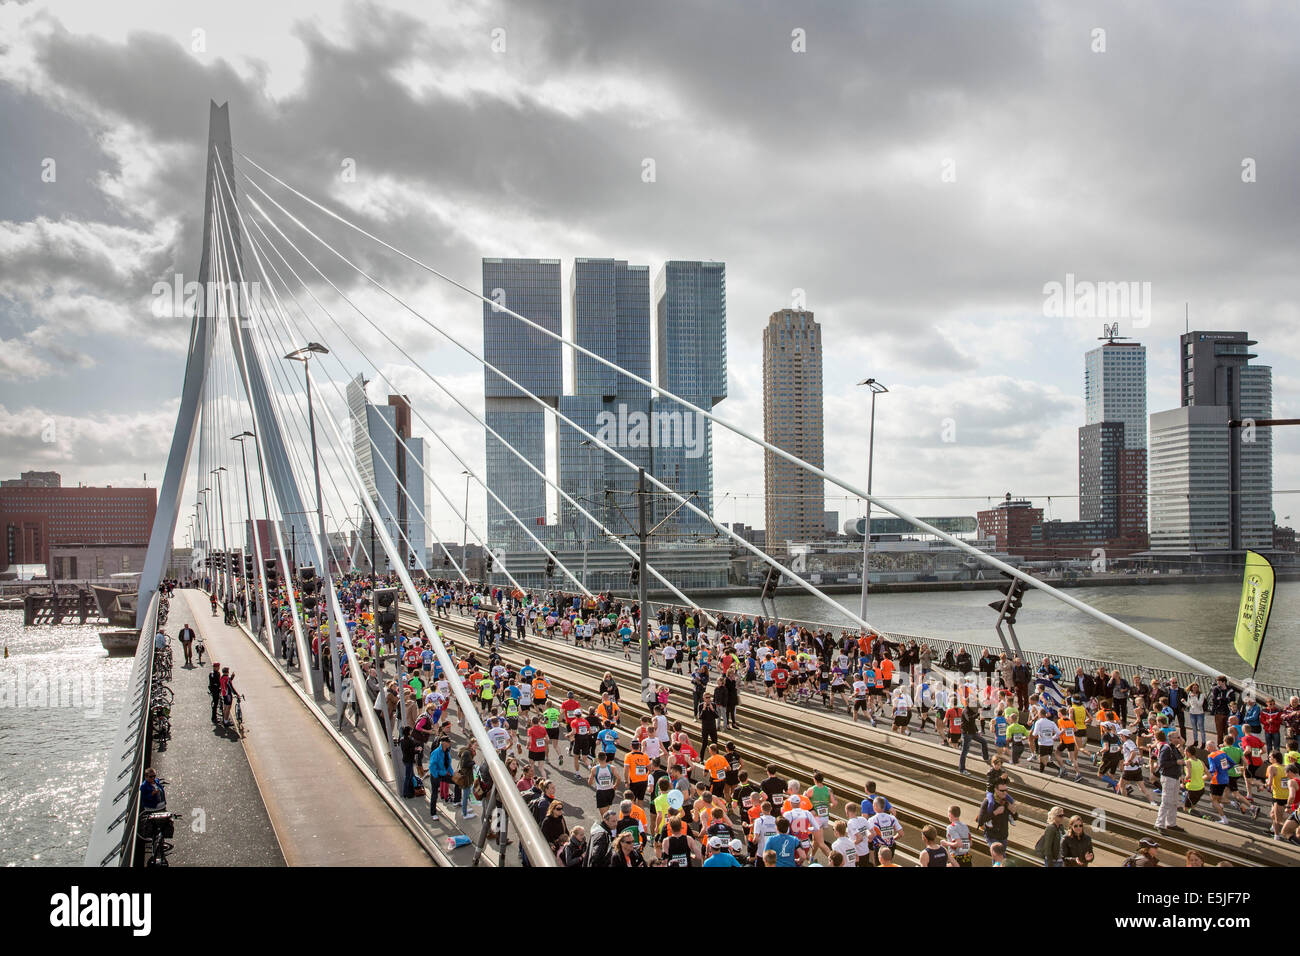 Países Bajos, Rotterdam, ABN-AMRO Marathon 2014. Corredores en puente Erasmus Foto de stock